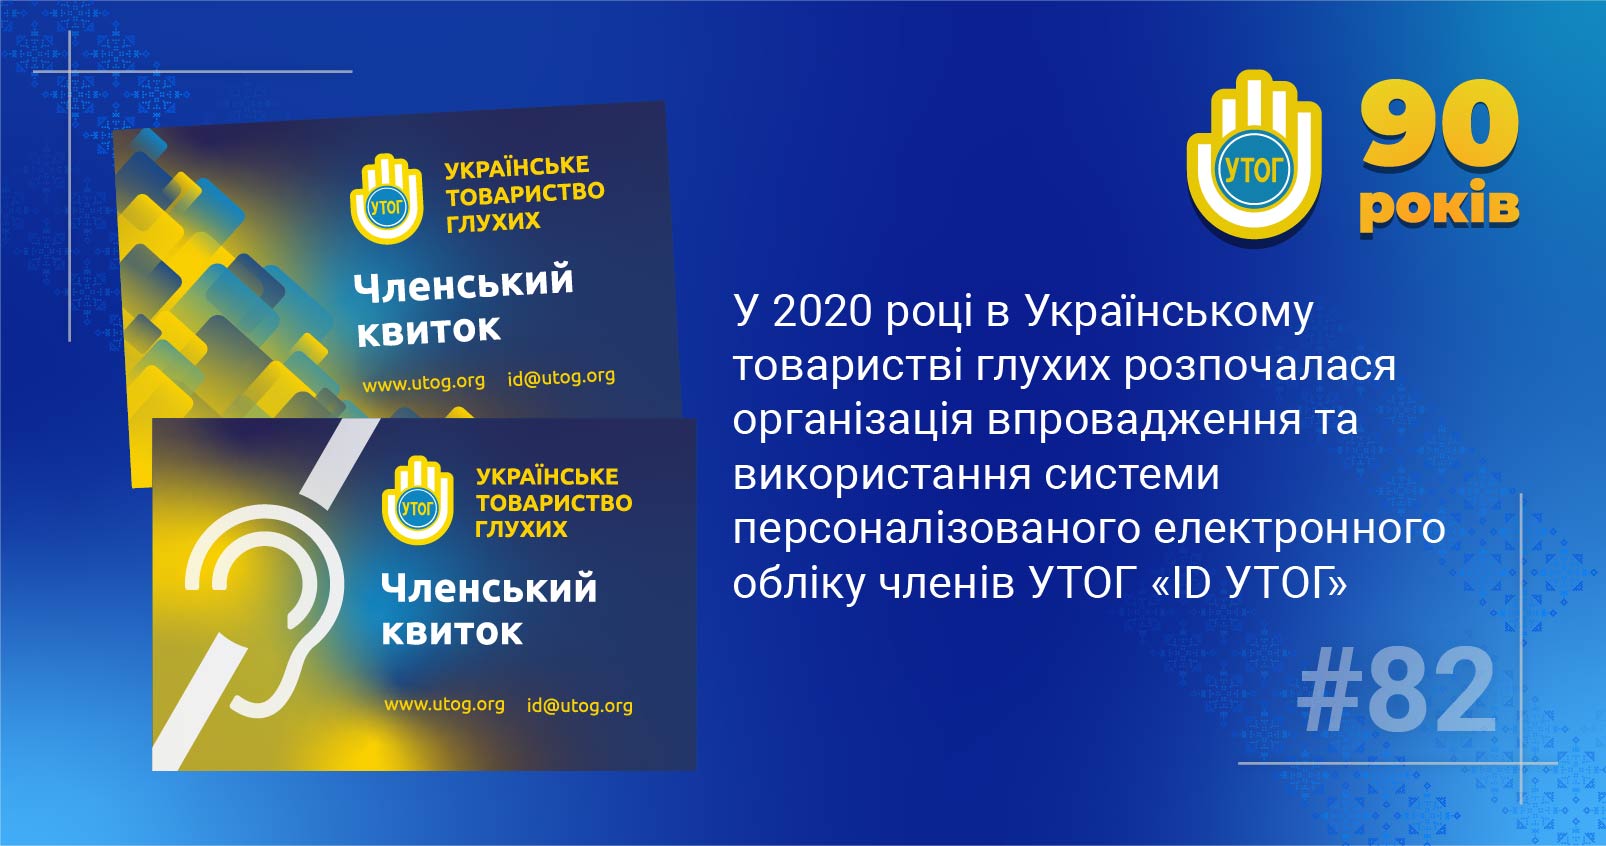 82. У 2020 році в Українському товаристві глухих розпочалася організація впровадження та використання системи персоналізованого електронного обліку членів УТОГ «ID УТОГ»